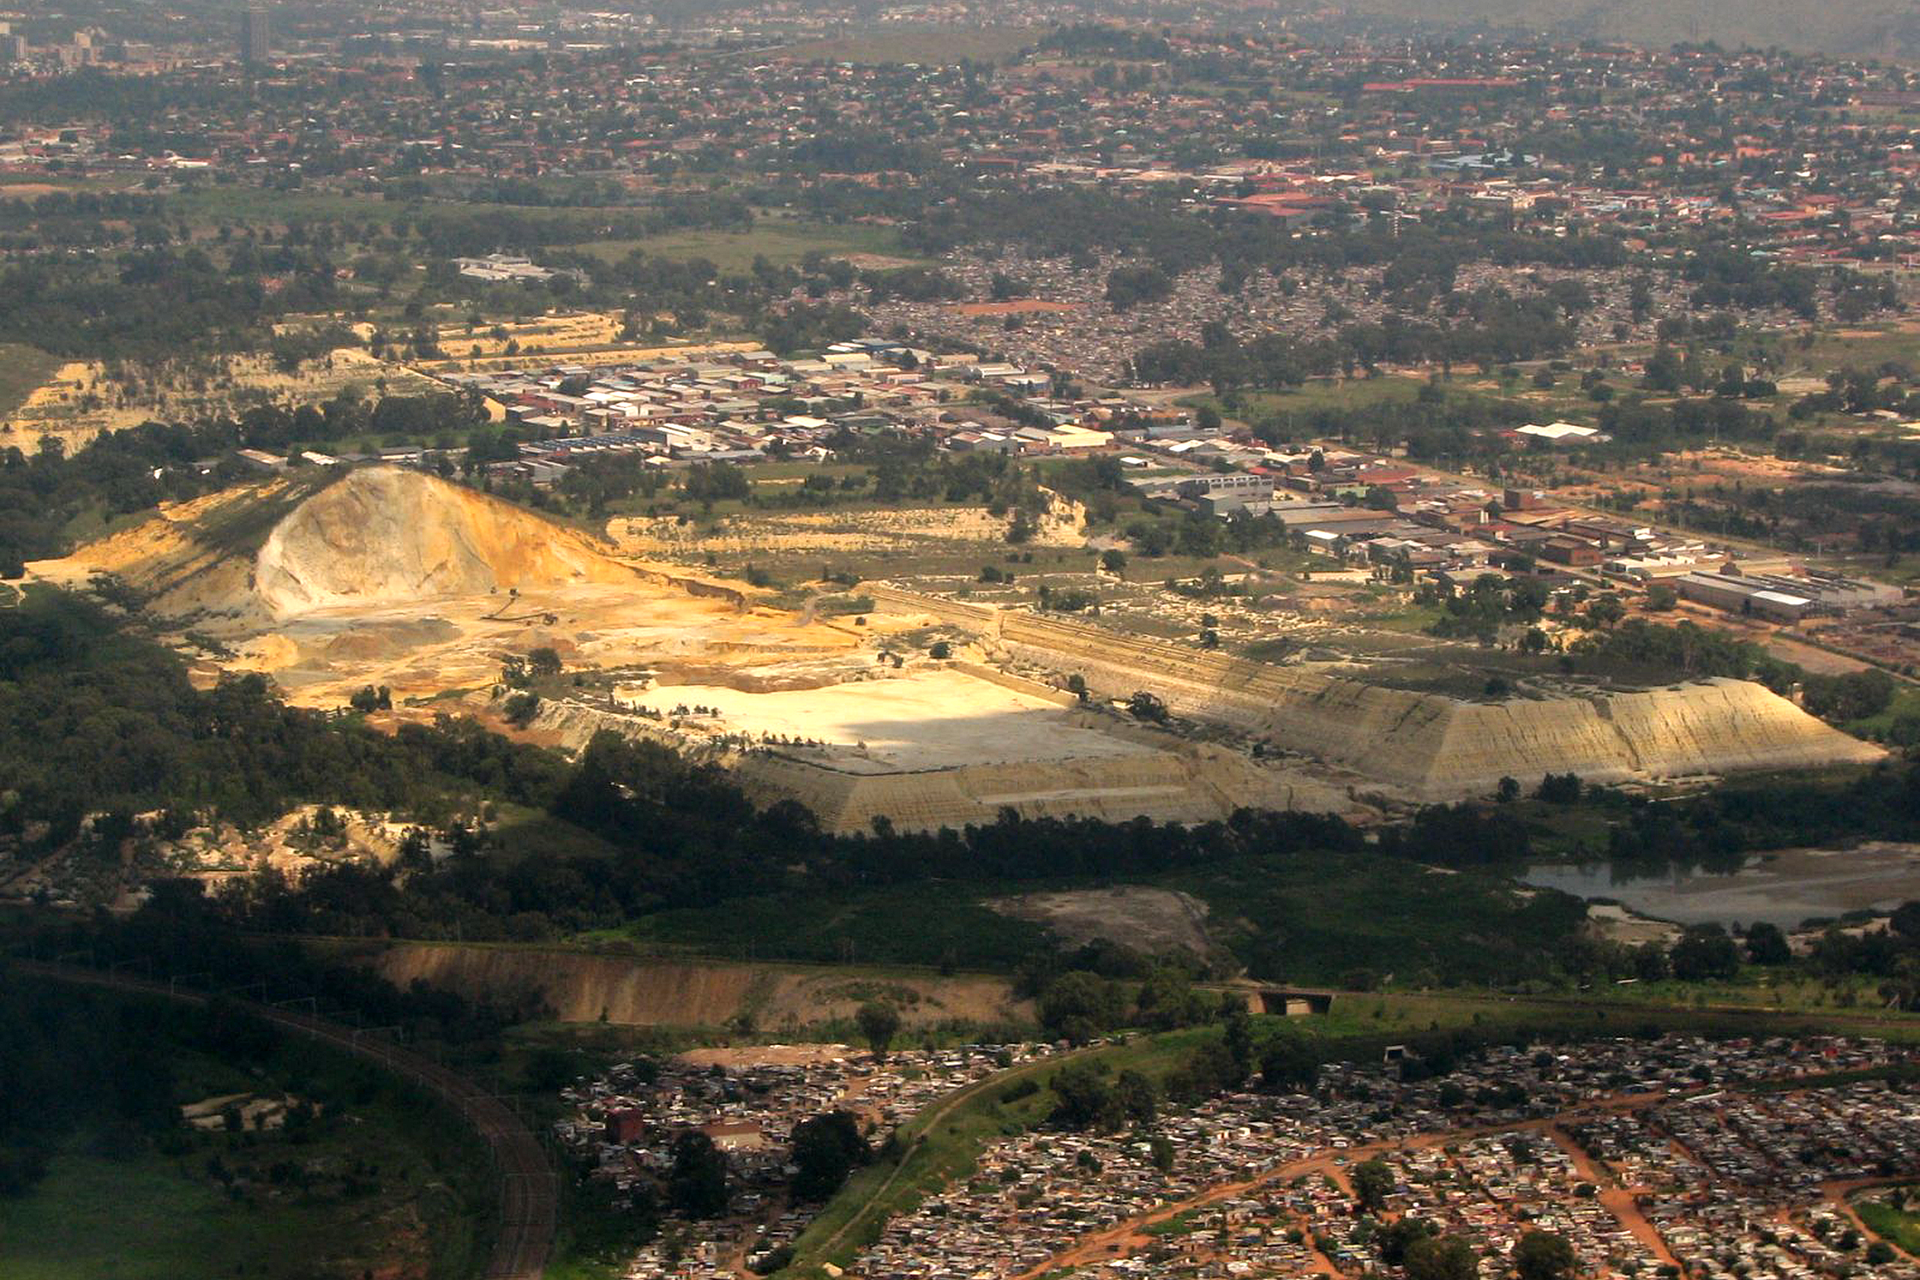 Fotografia przedstawia pejzaż przemysłowy, w ujęciu z góry. W centrum znajdują się żółte i kremowe bryły; to hałdy składowanych odpadów. Są ogromne w porównaniu z domami w okolicy.